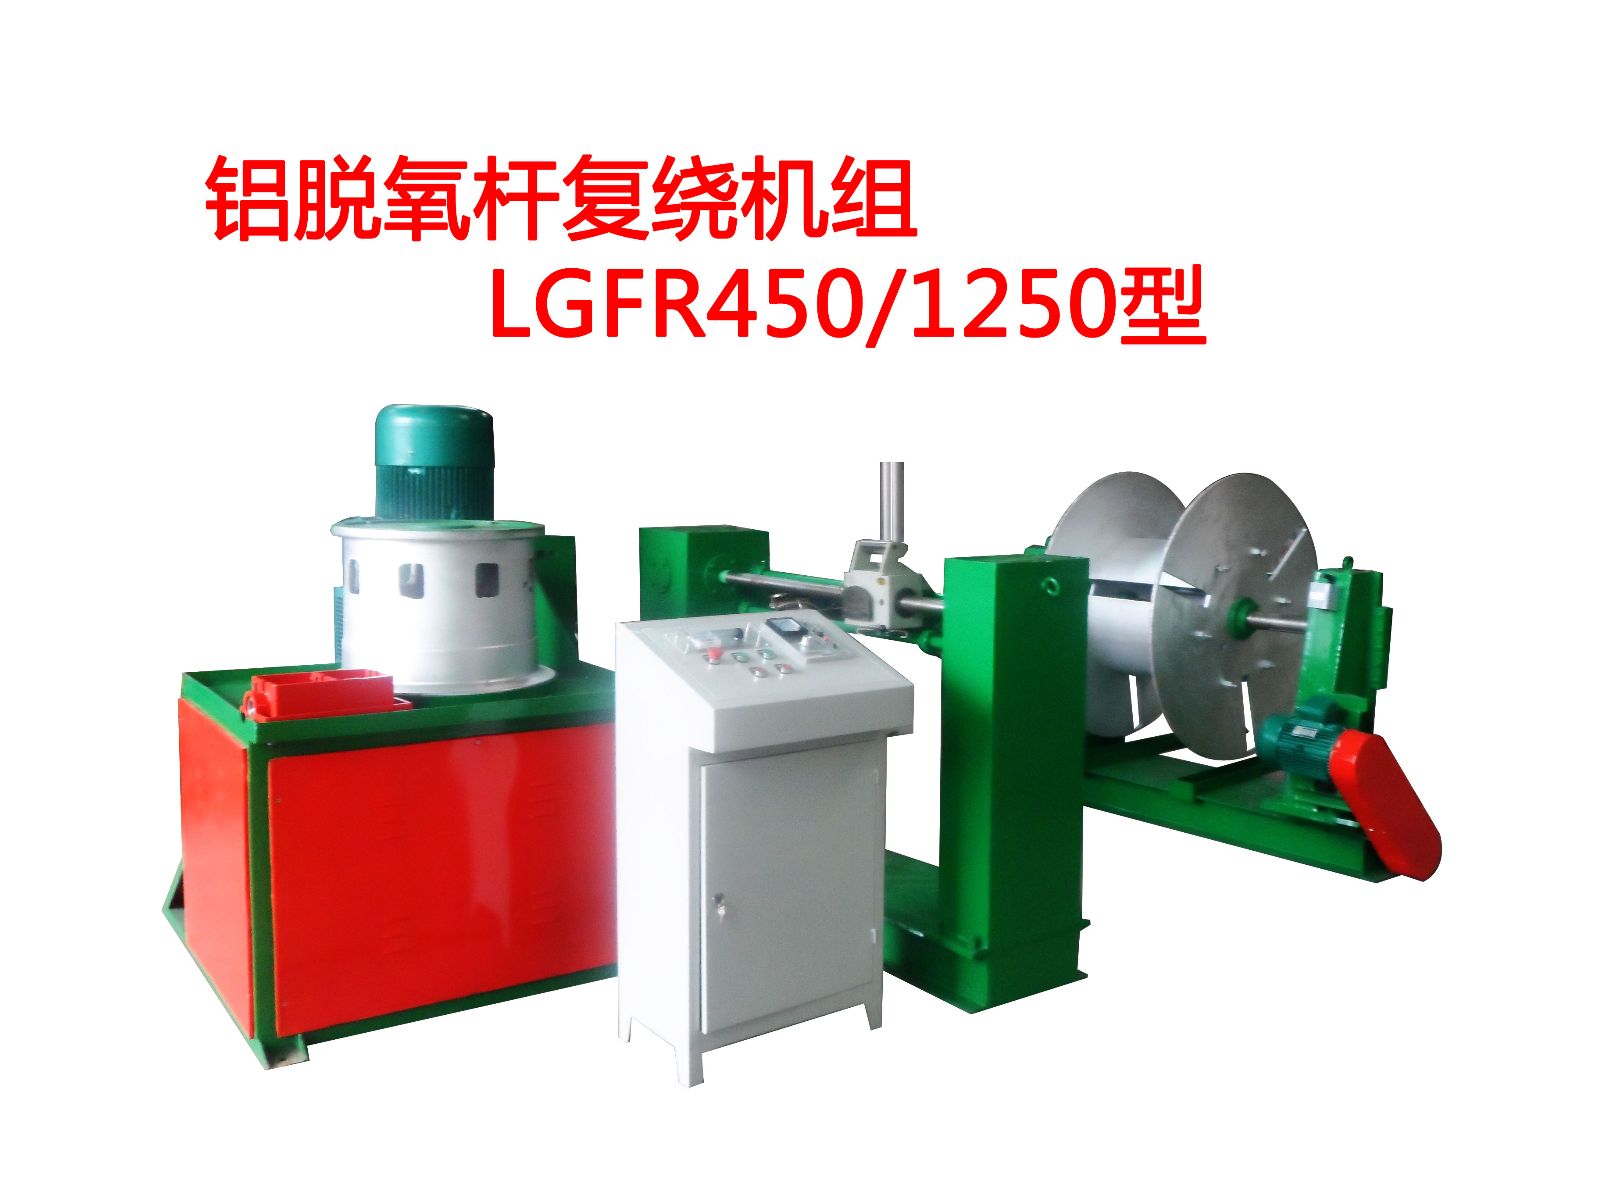 铝脱氧杆复绕机组LGFR450-1250型